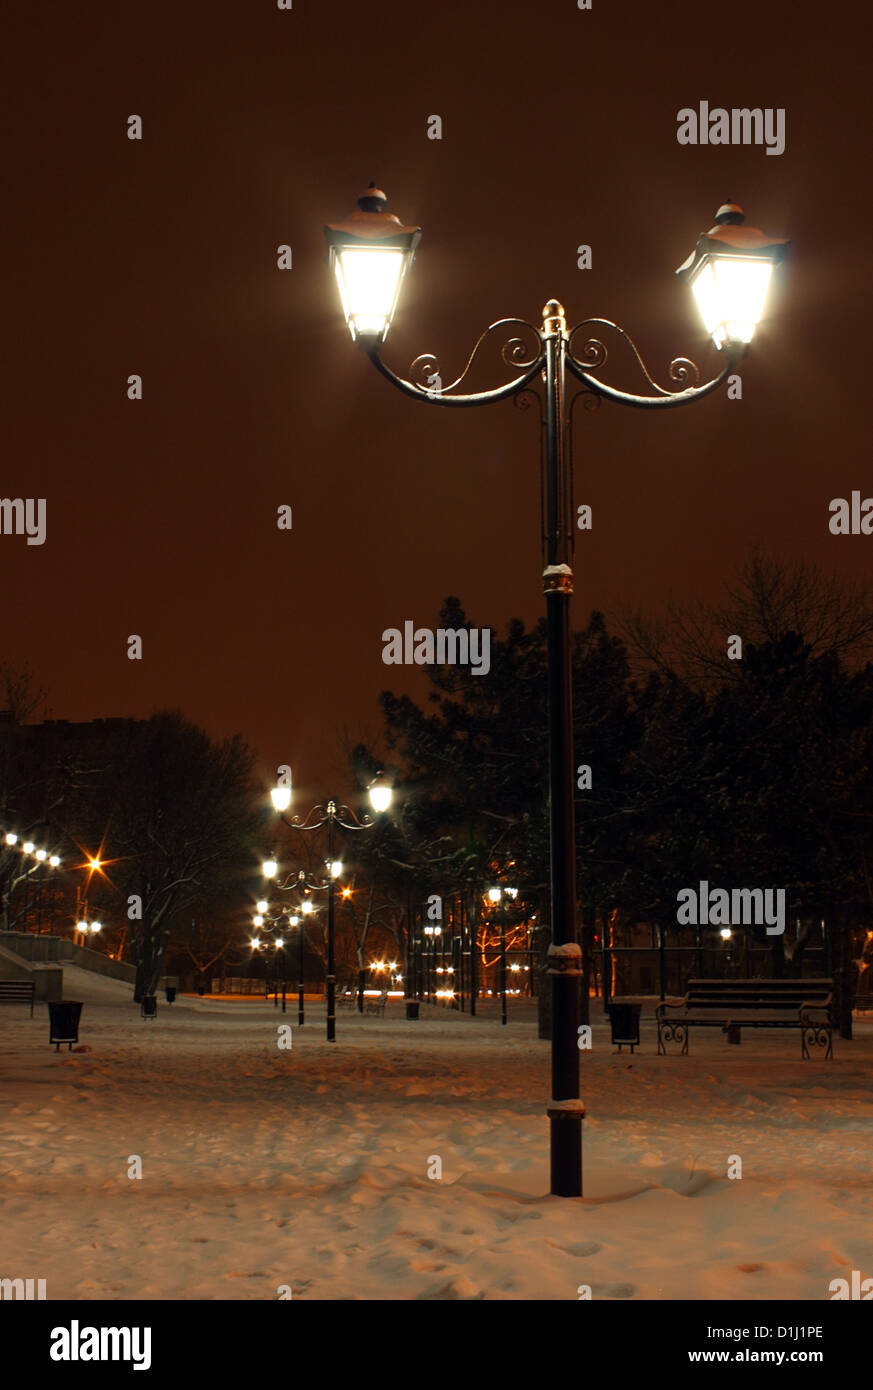 Au parc de la rue lanterne dans la nuit d'hiver Banque D'Images